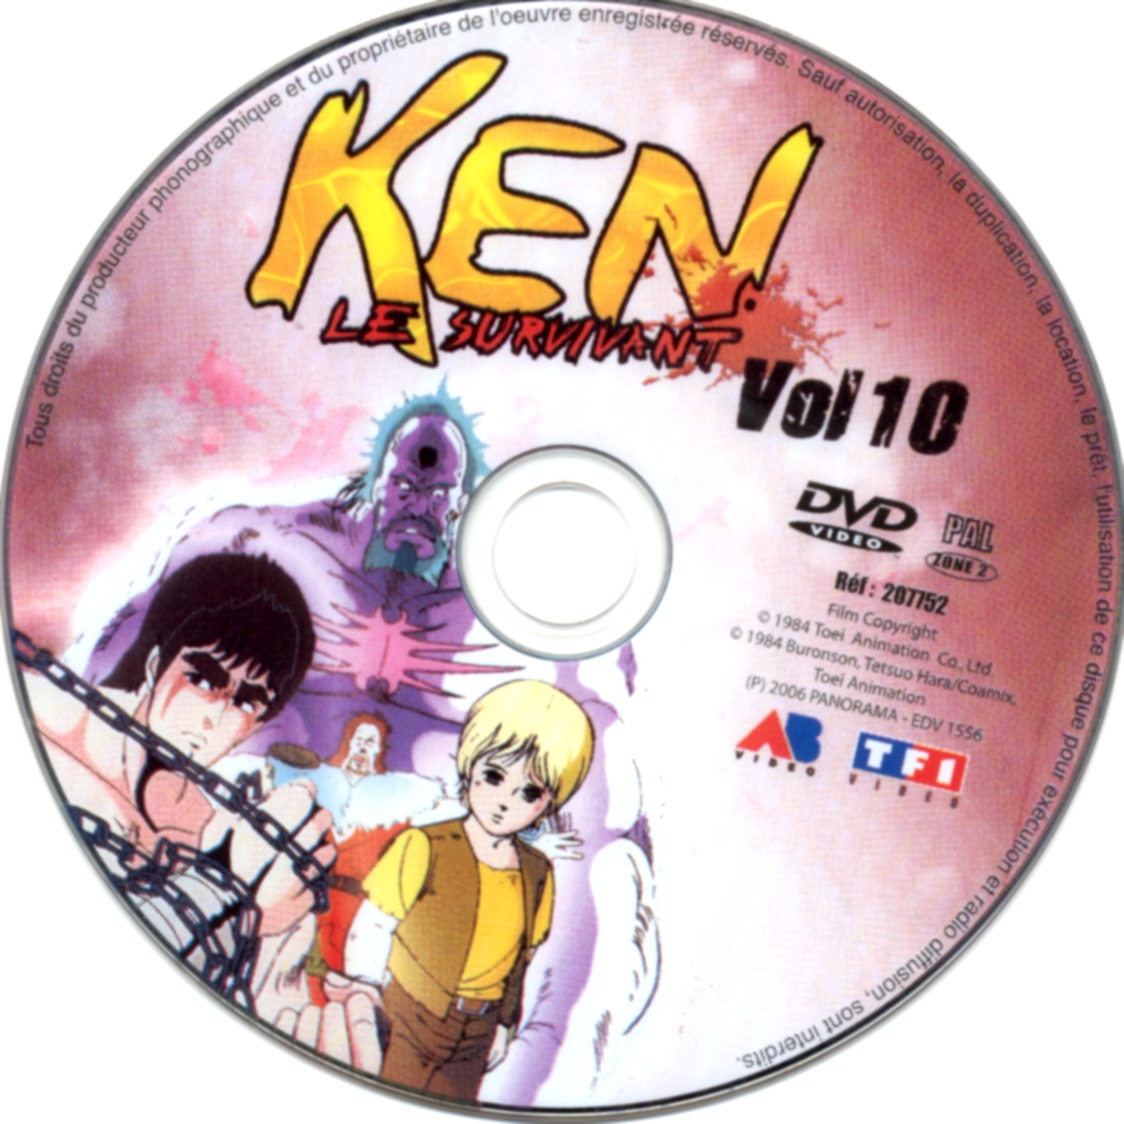 Ken le survivant vol 10